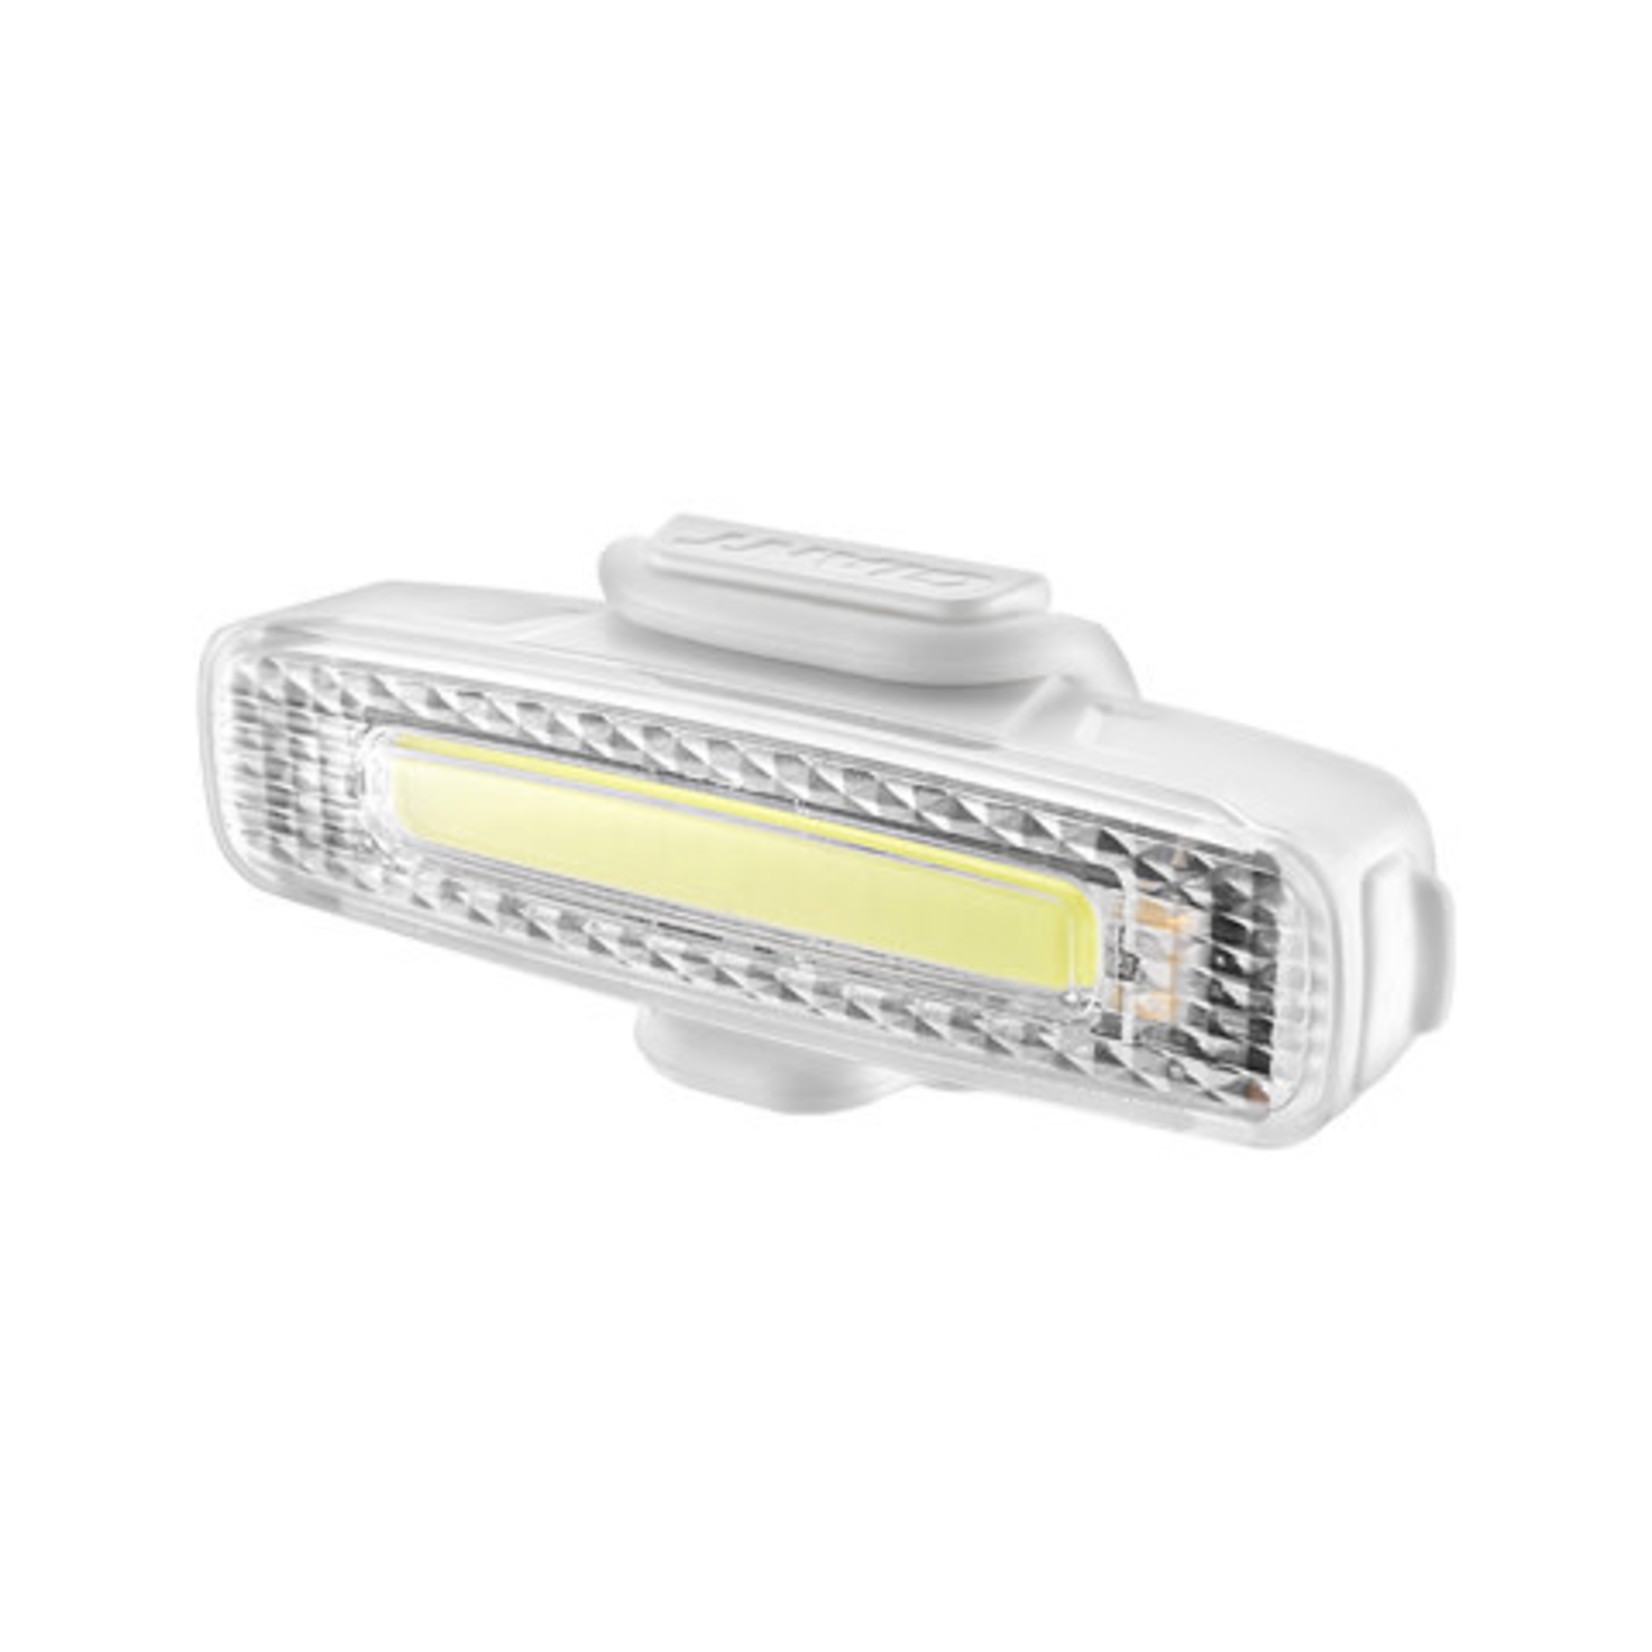 Giant Numen+ Spark 16-LED USB Headlight White